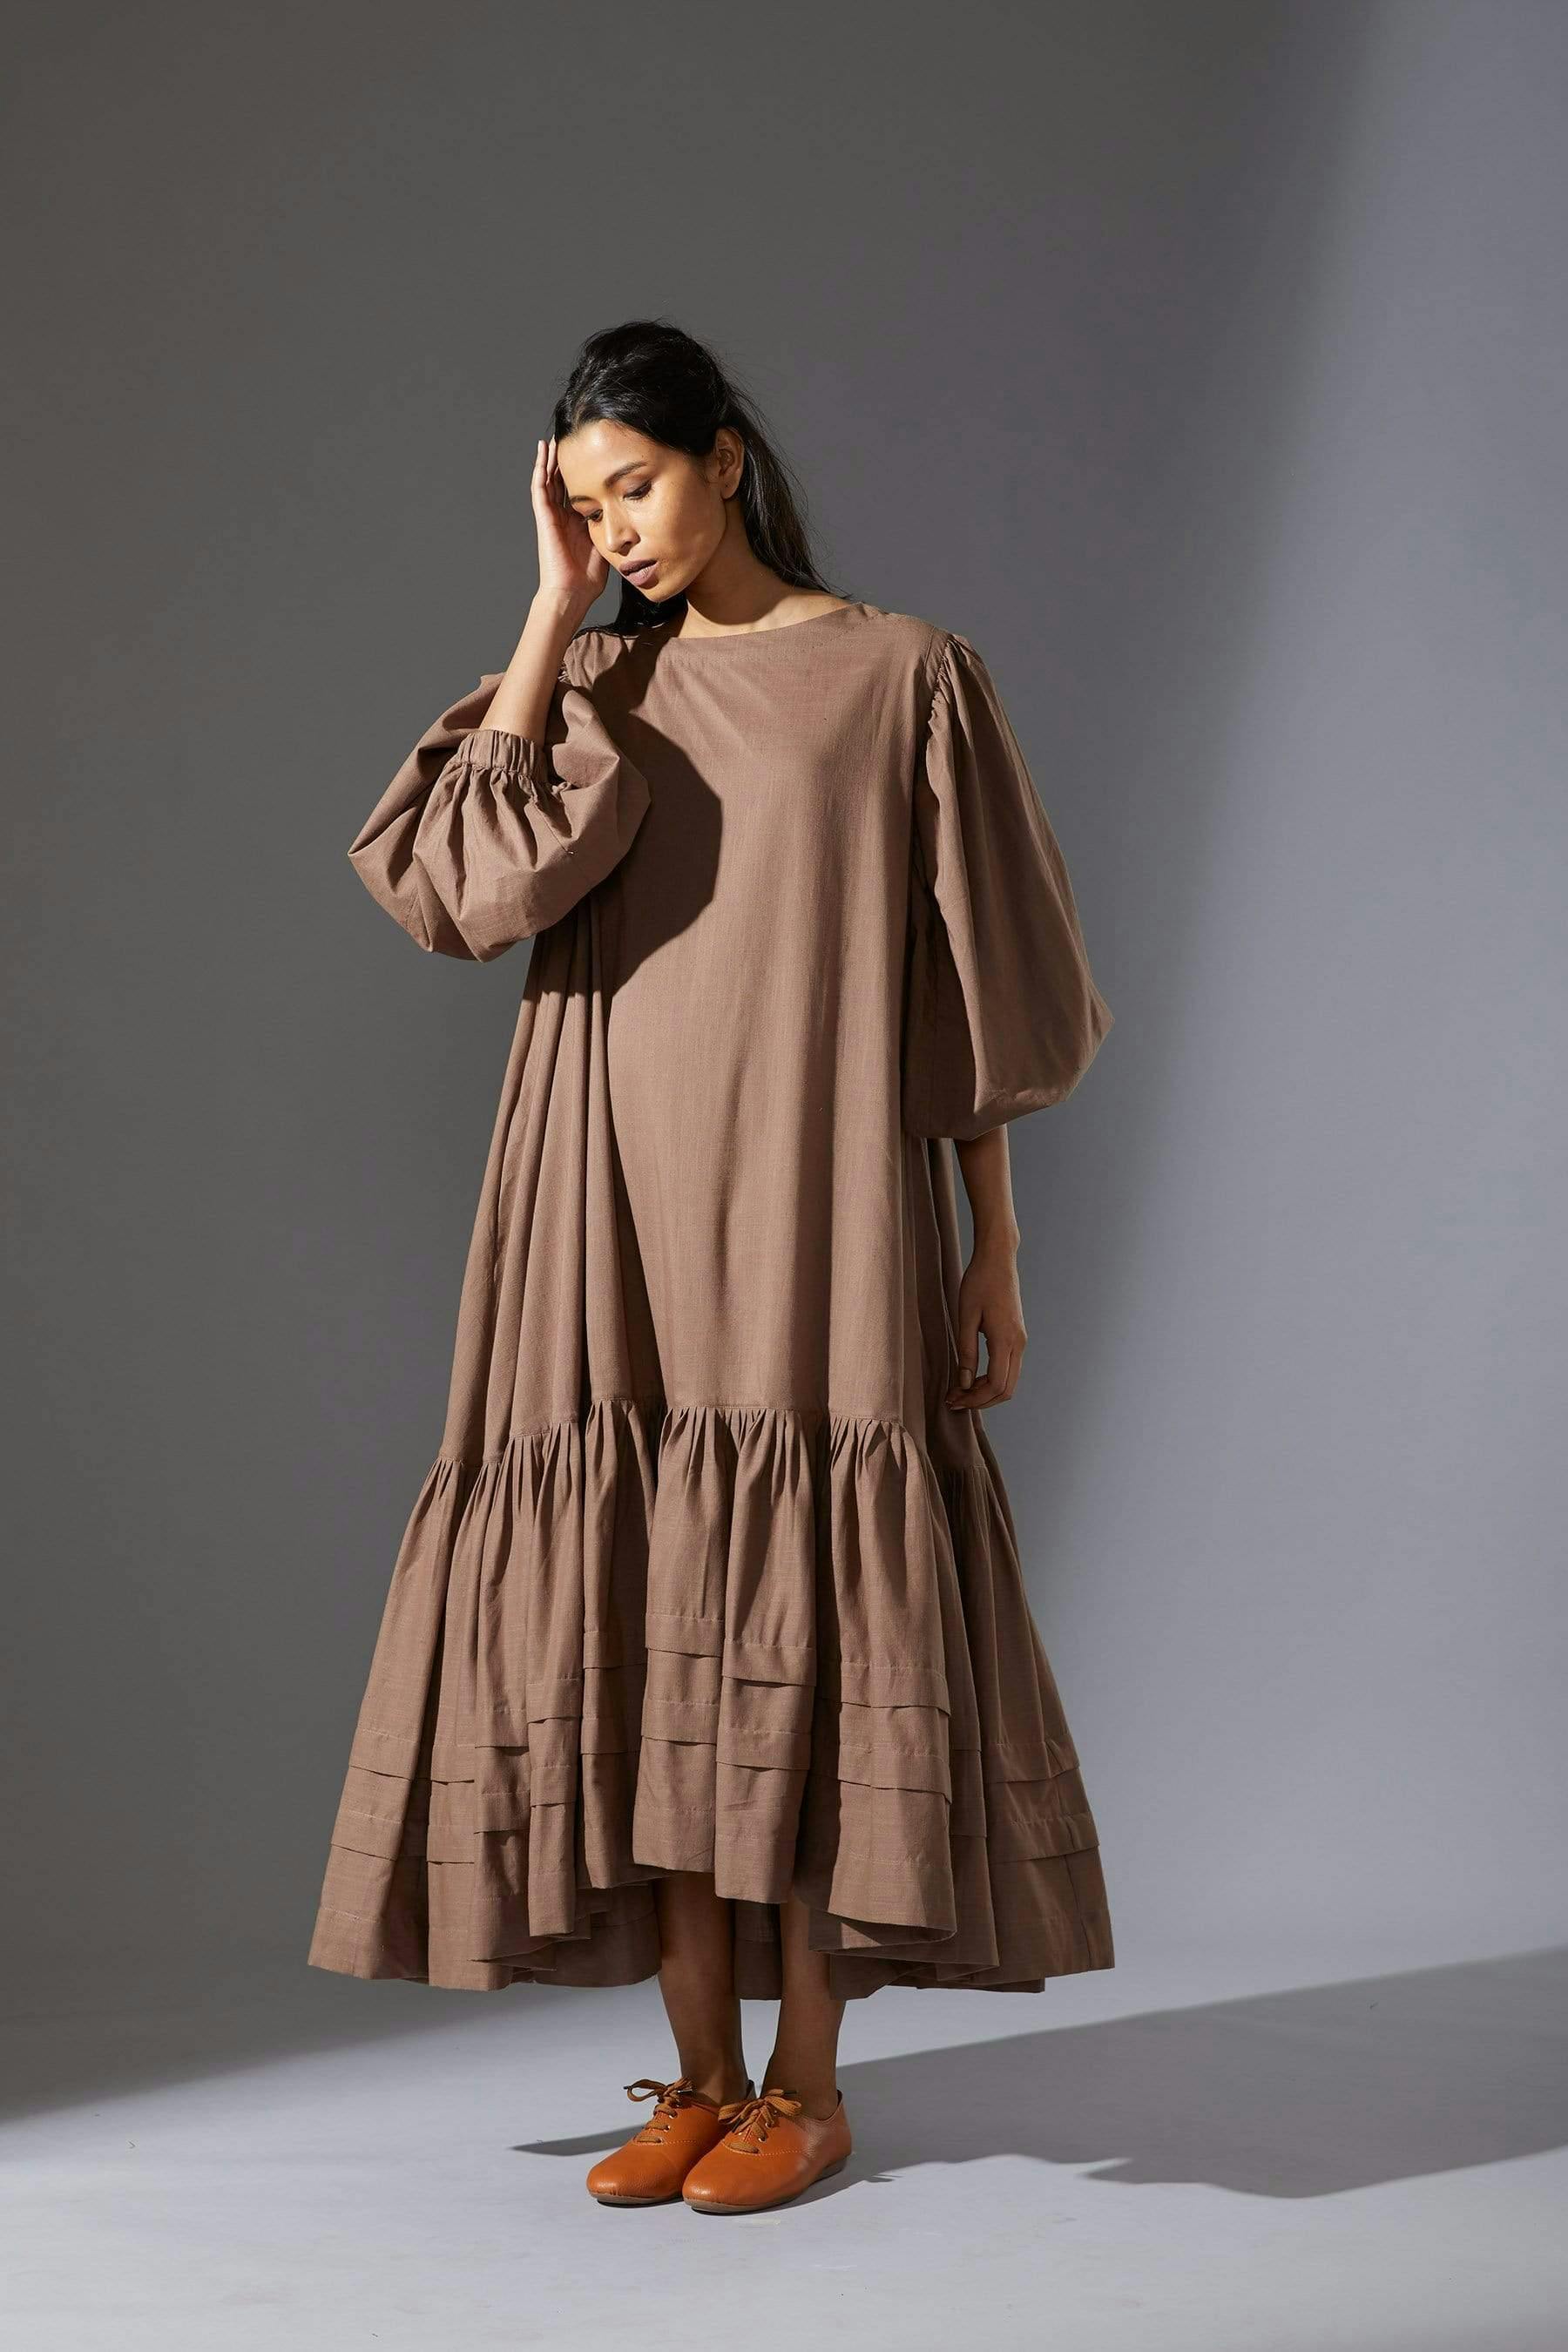 Mati Kaavya Beige Dress, a product by Style Mati